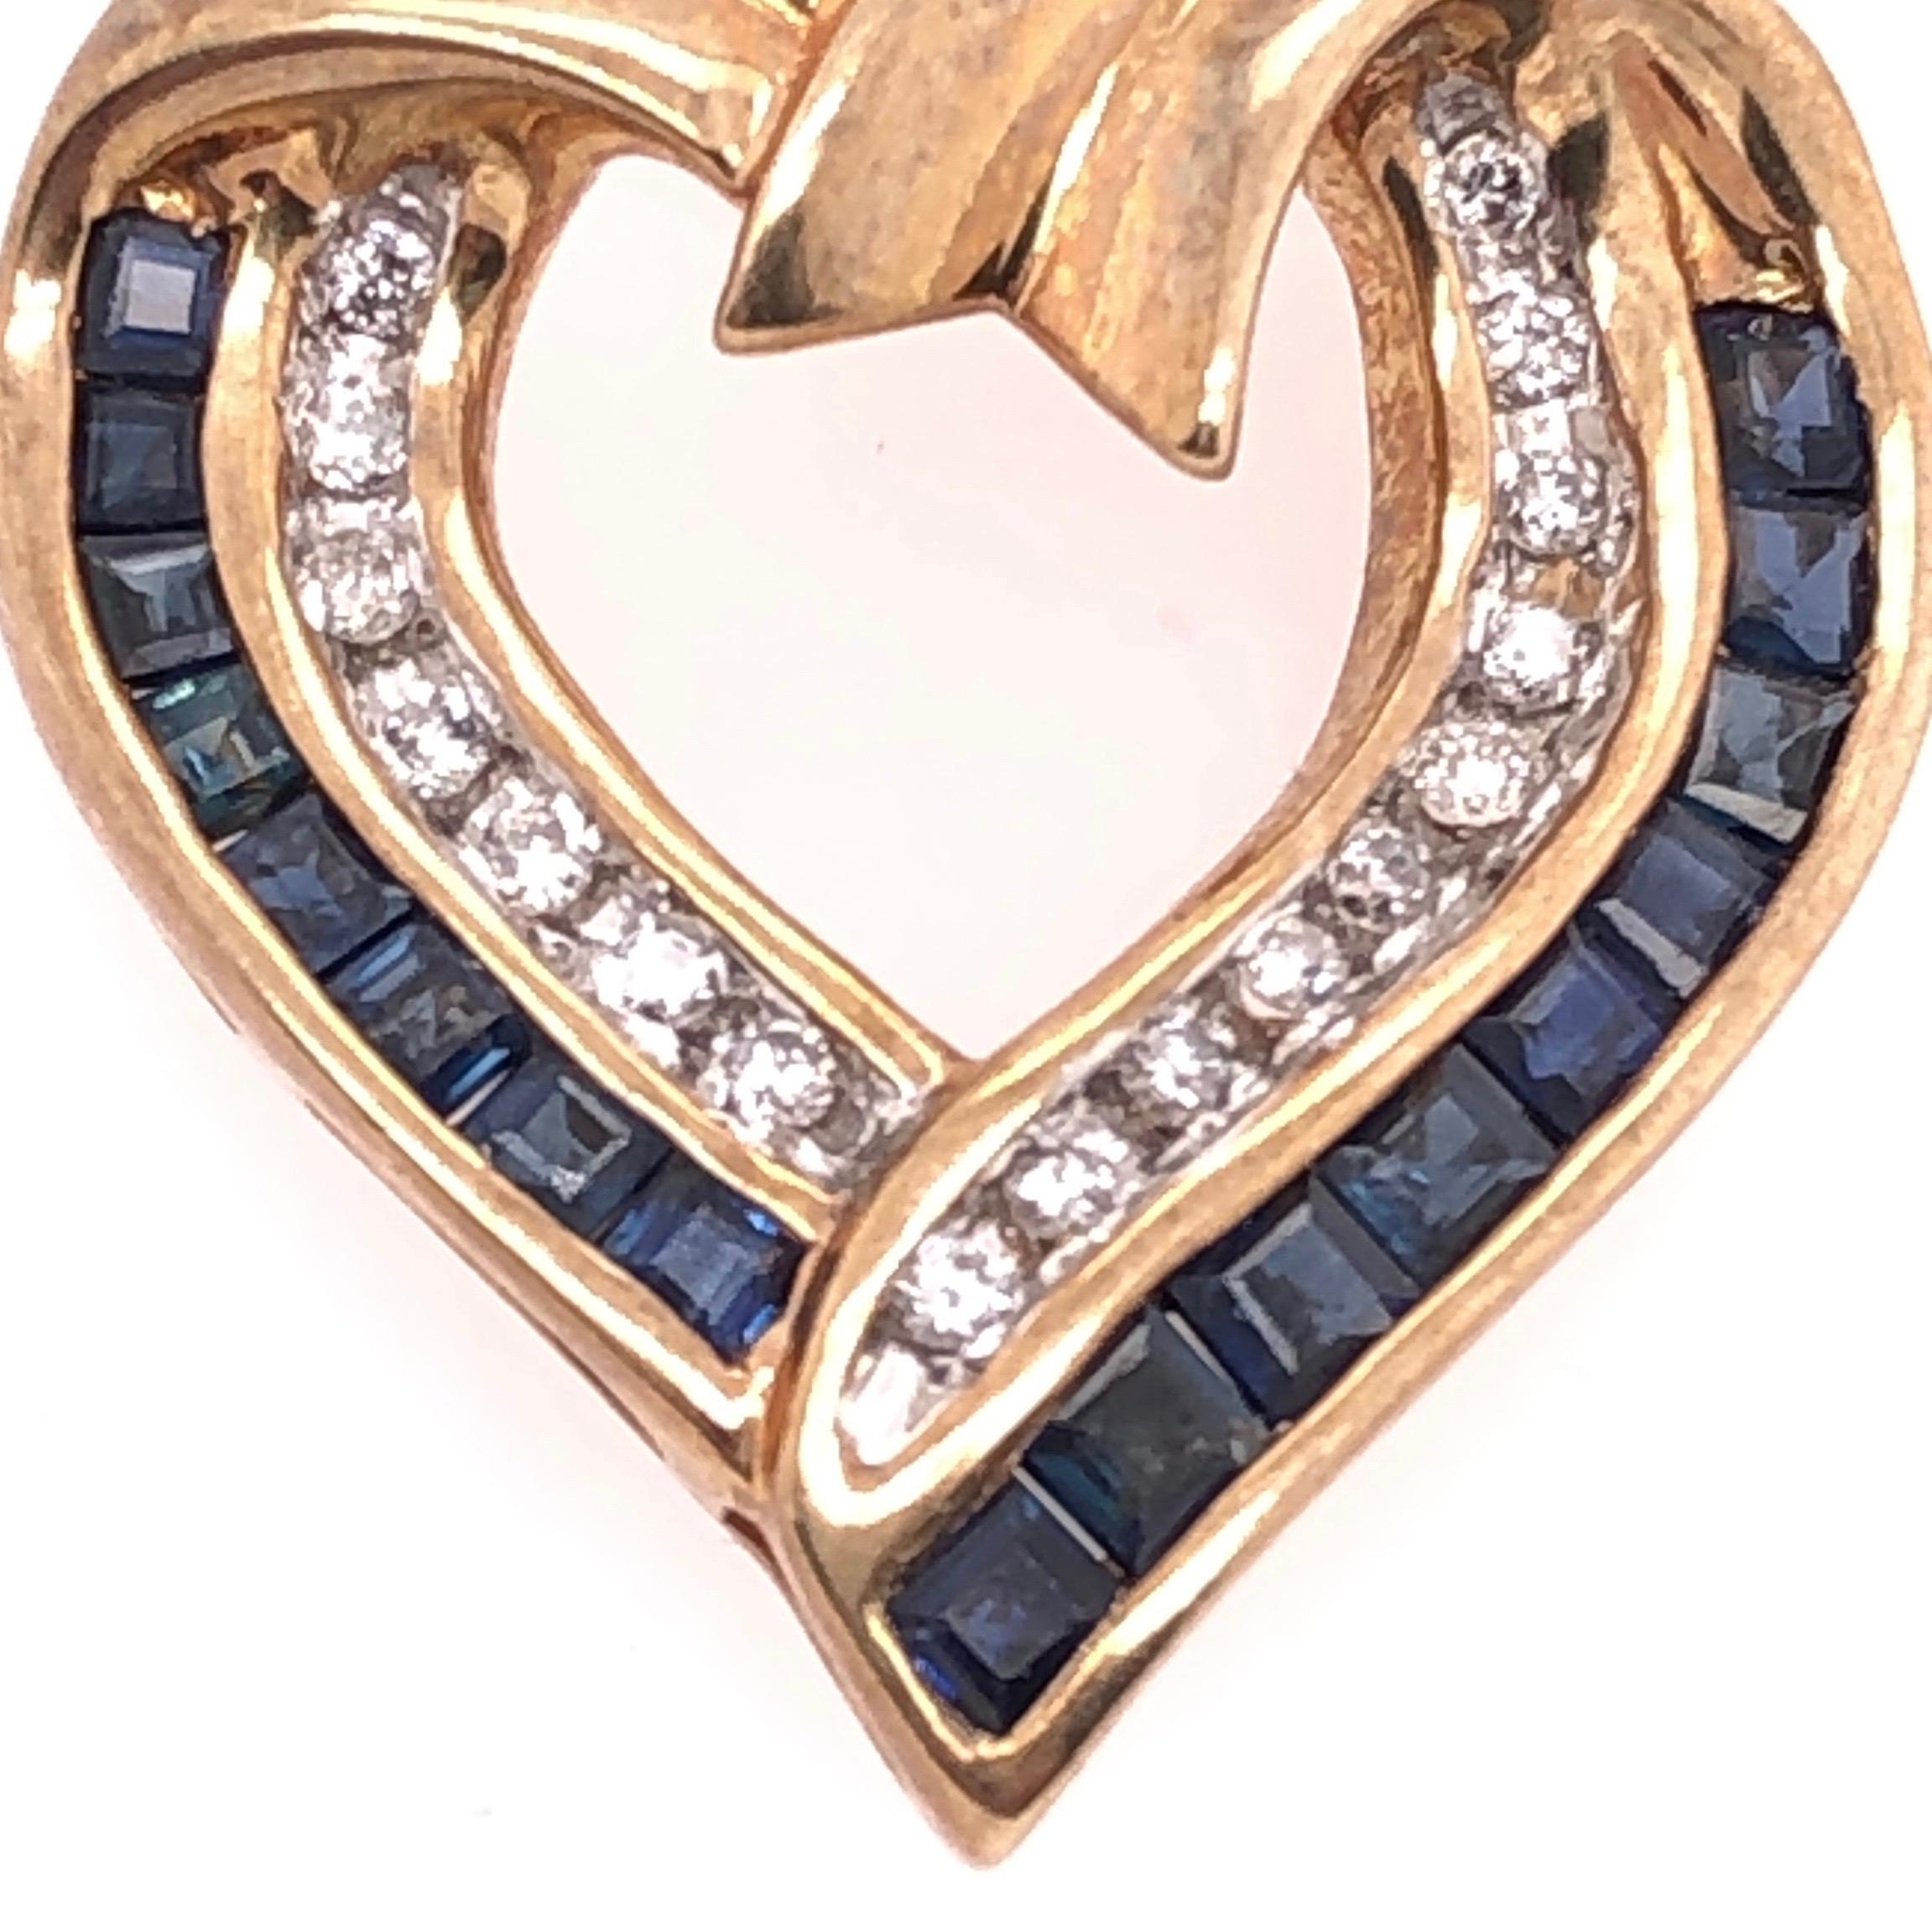 10 Karat Gelbgold Charm/Herz-Anhänger mit blauen Saphiren und Diamanten.
4.1 Gramm Gesamtgewicht.